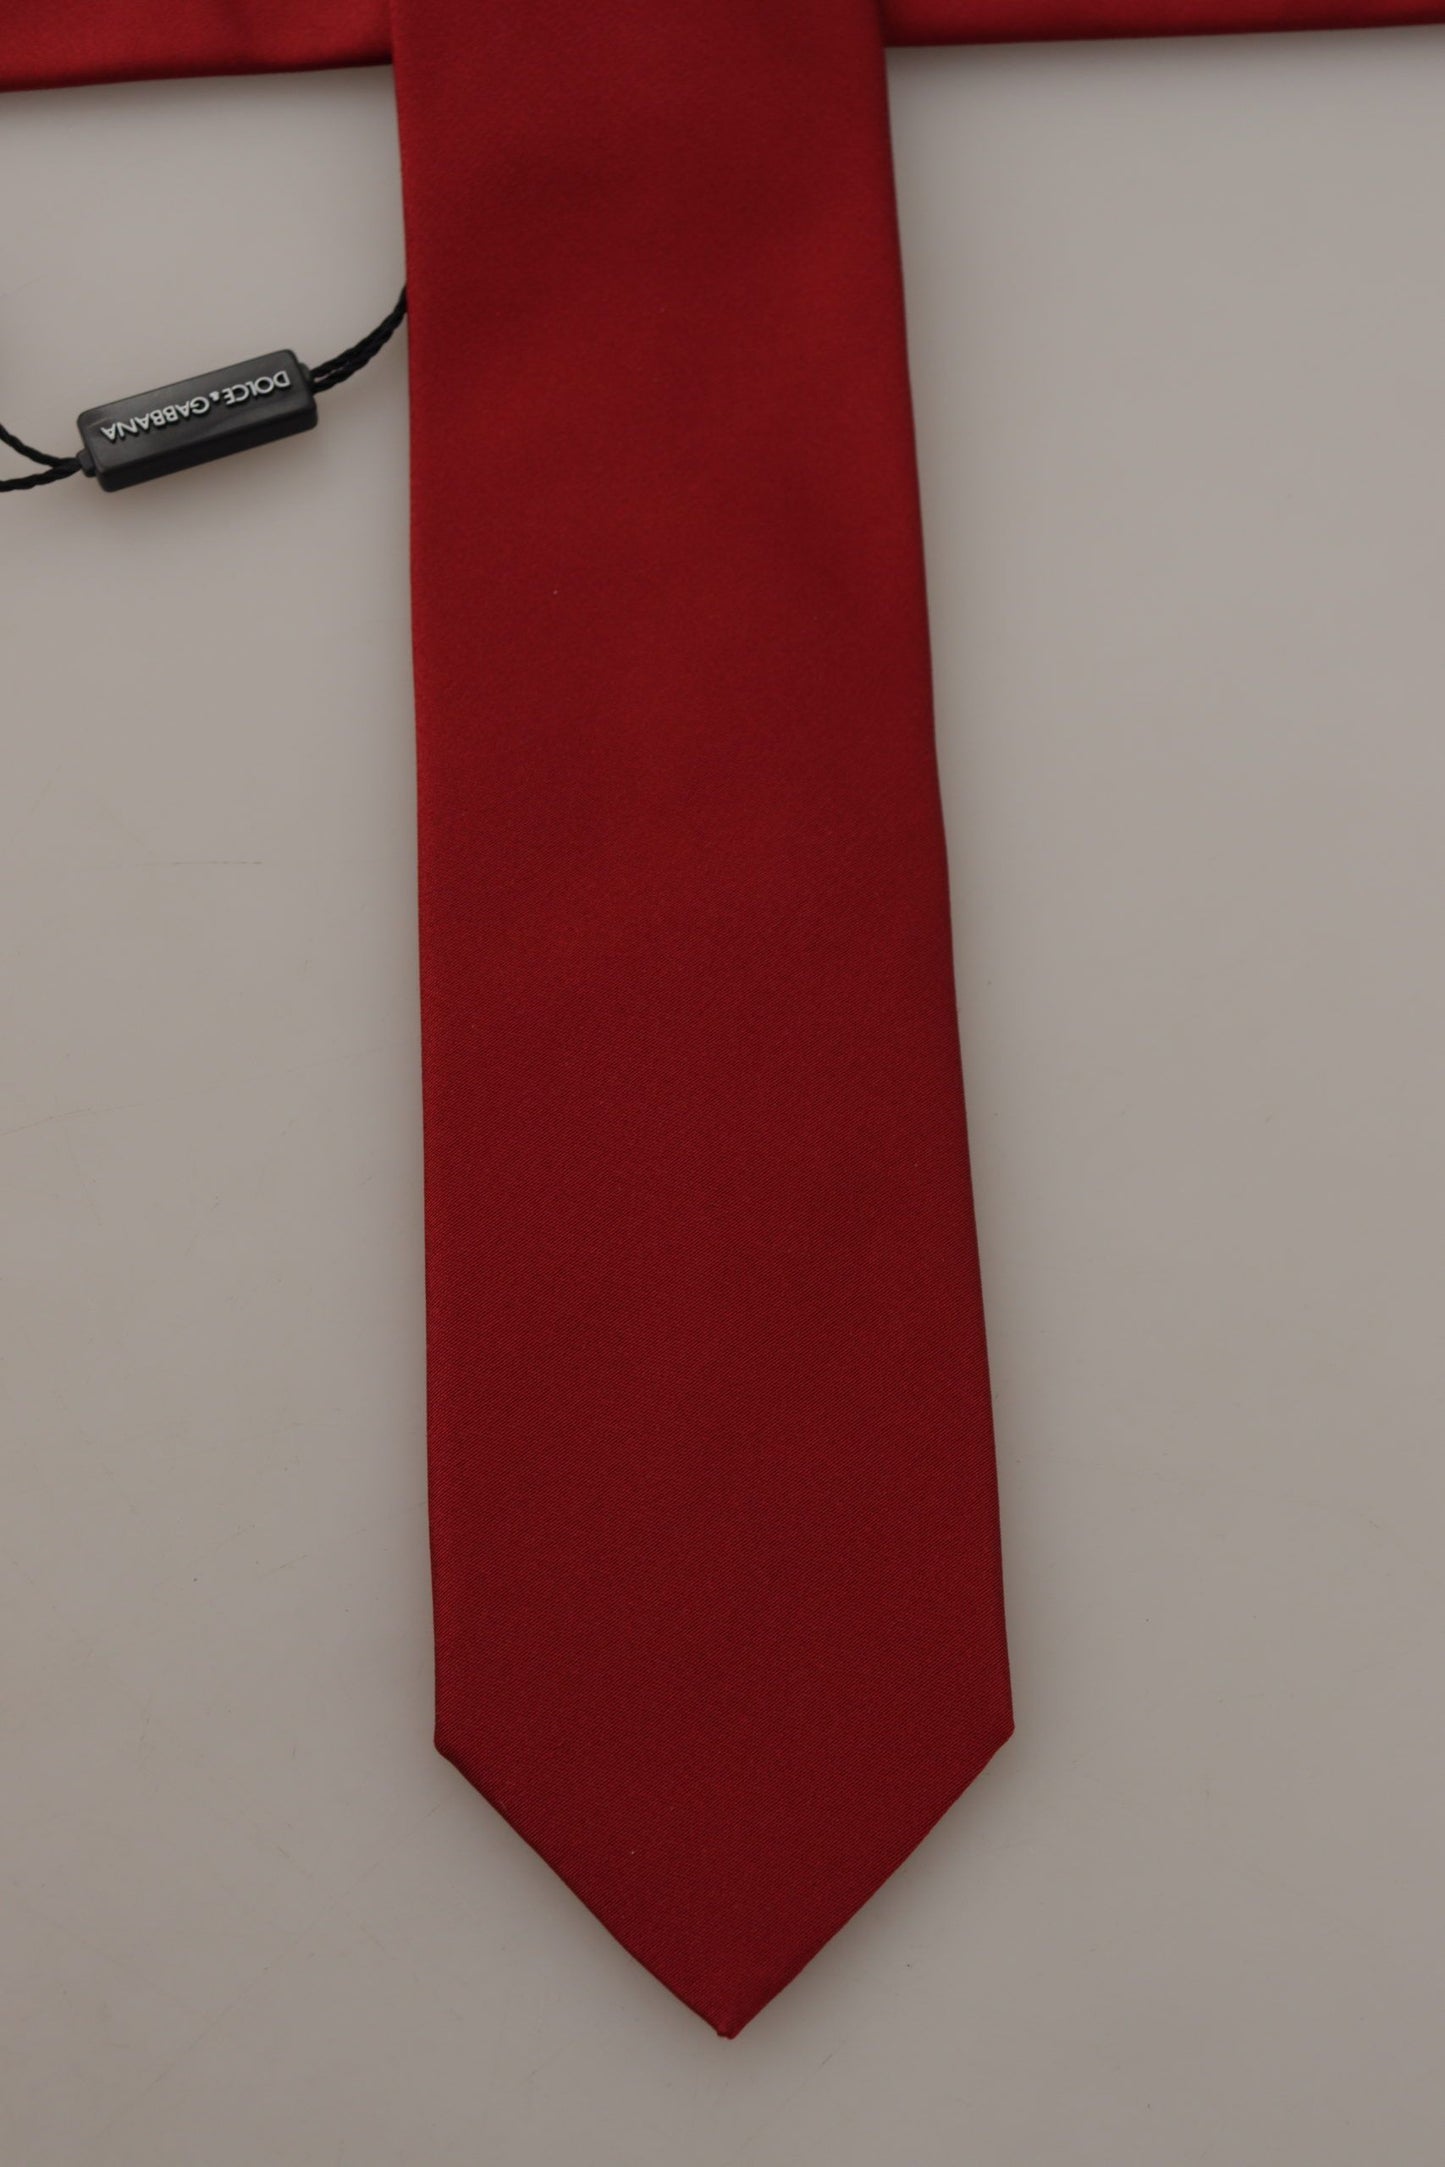 Dolce & Gabbana Red Solid Print 100% Silk Adjustable Accessory Necktie